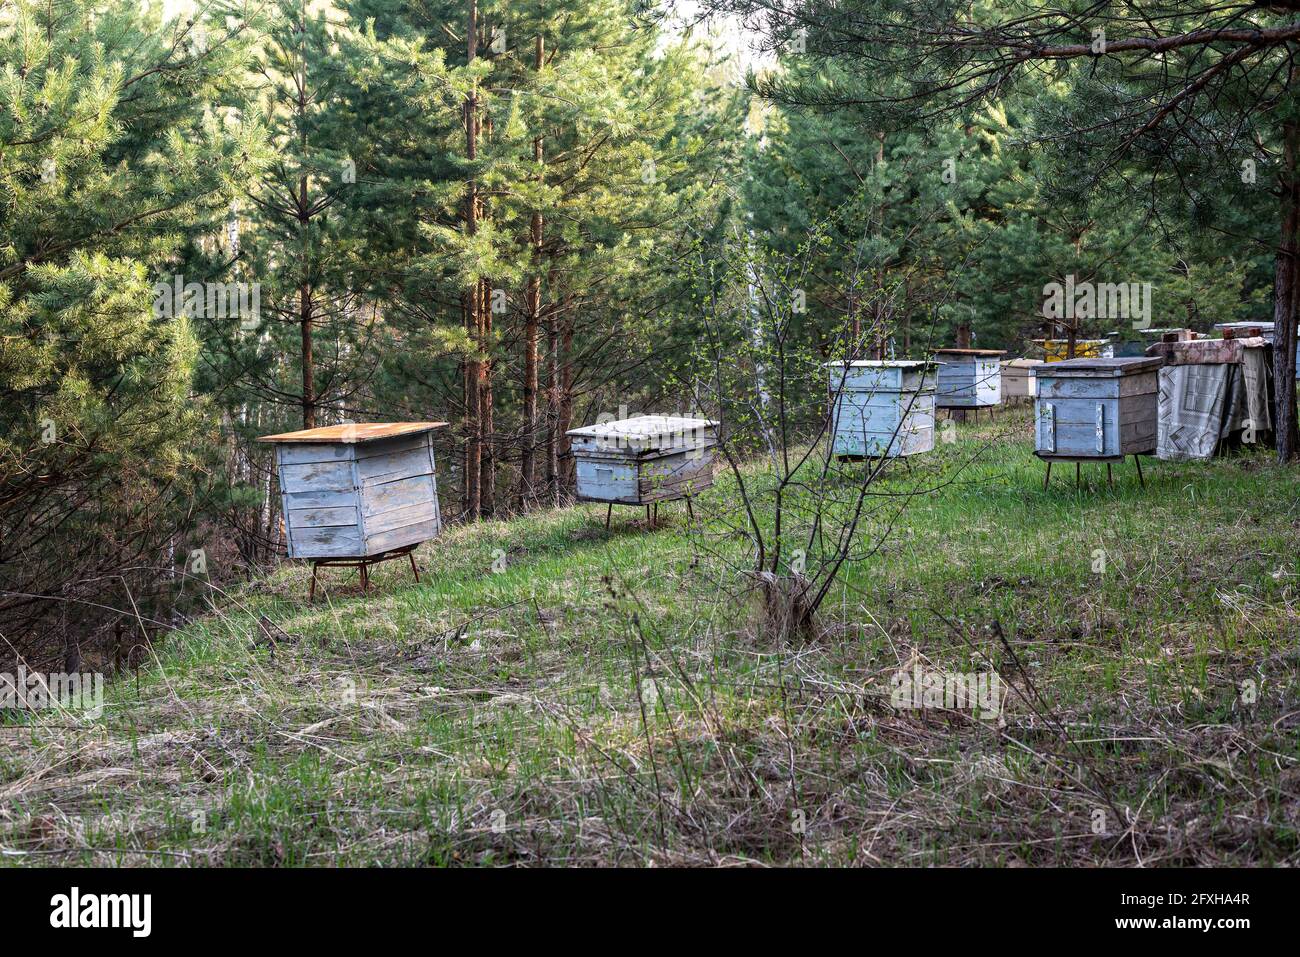 Ruelle avec des ruches en bois sur une colline verte dans une forêt de pins Banque D'Images